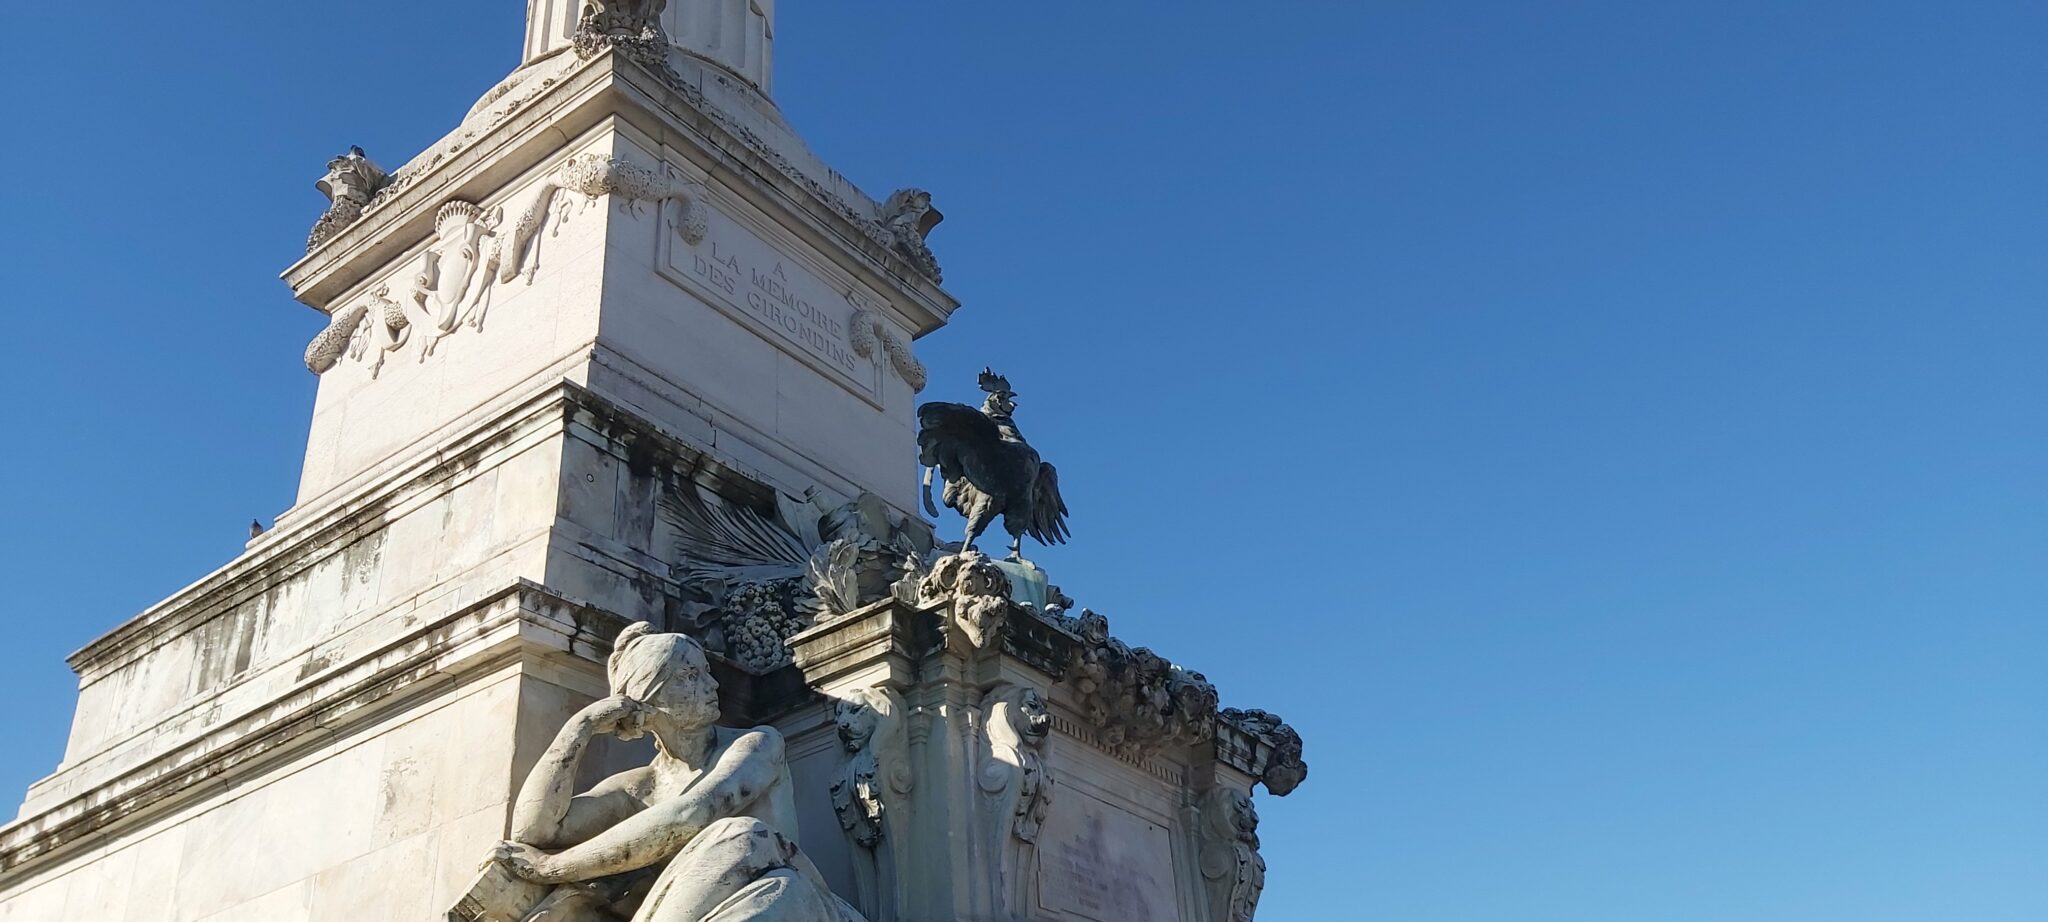 Si le coq renvoie depuis l’époque romaine aux populations qui vivaient de l’autre côté des Alpes, ce sont les révolutionnaires qui en font un symbole de la toute nouvelle nation française en 1789, d’où sa présence sur le monument aux Girondins.